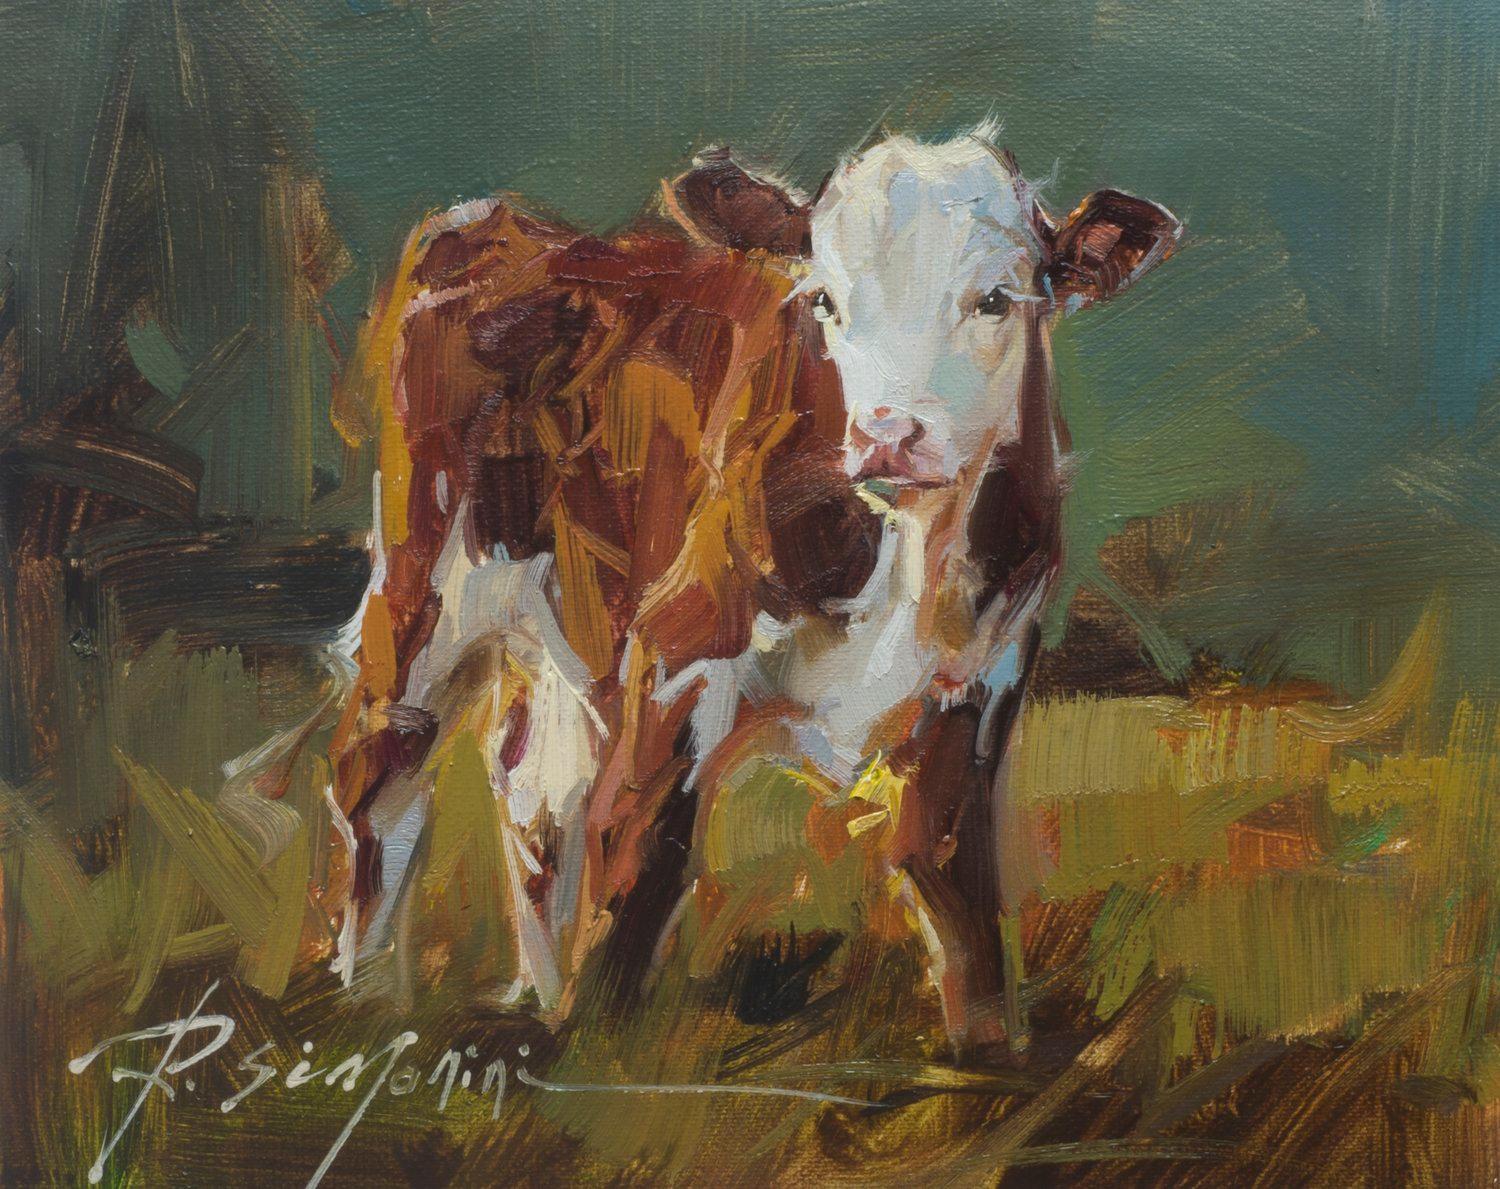 Ray Simonini, „Violet“, 8x10, Impressionistisches Ölgemälde auf Leinwand, Bauernhof-Tierskühn, Ölgemälde